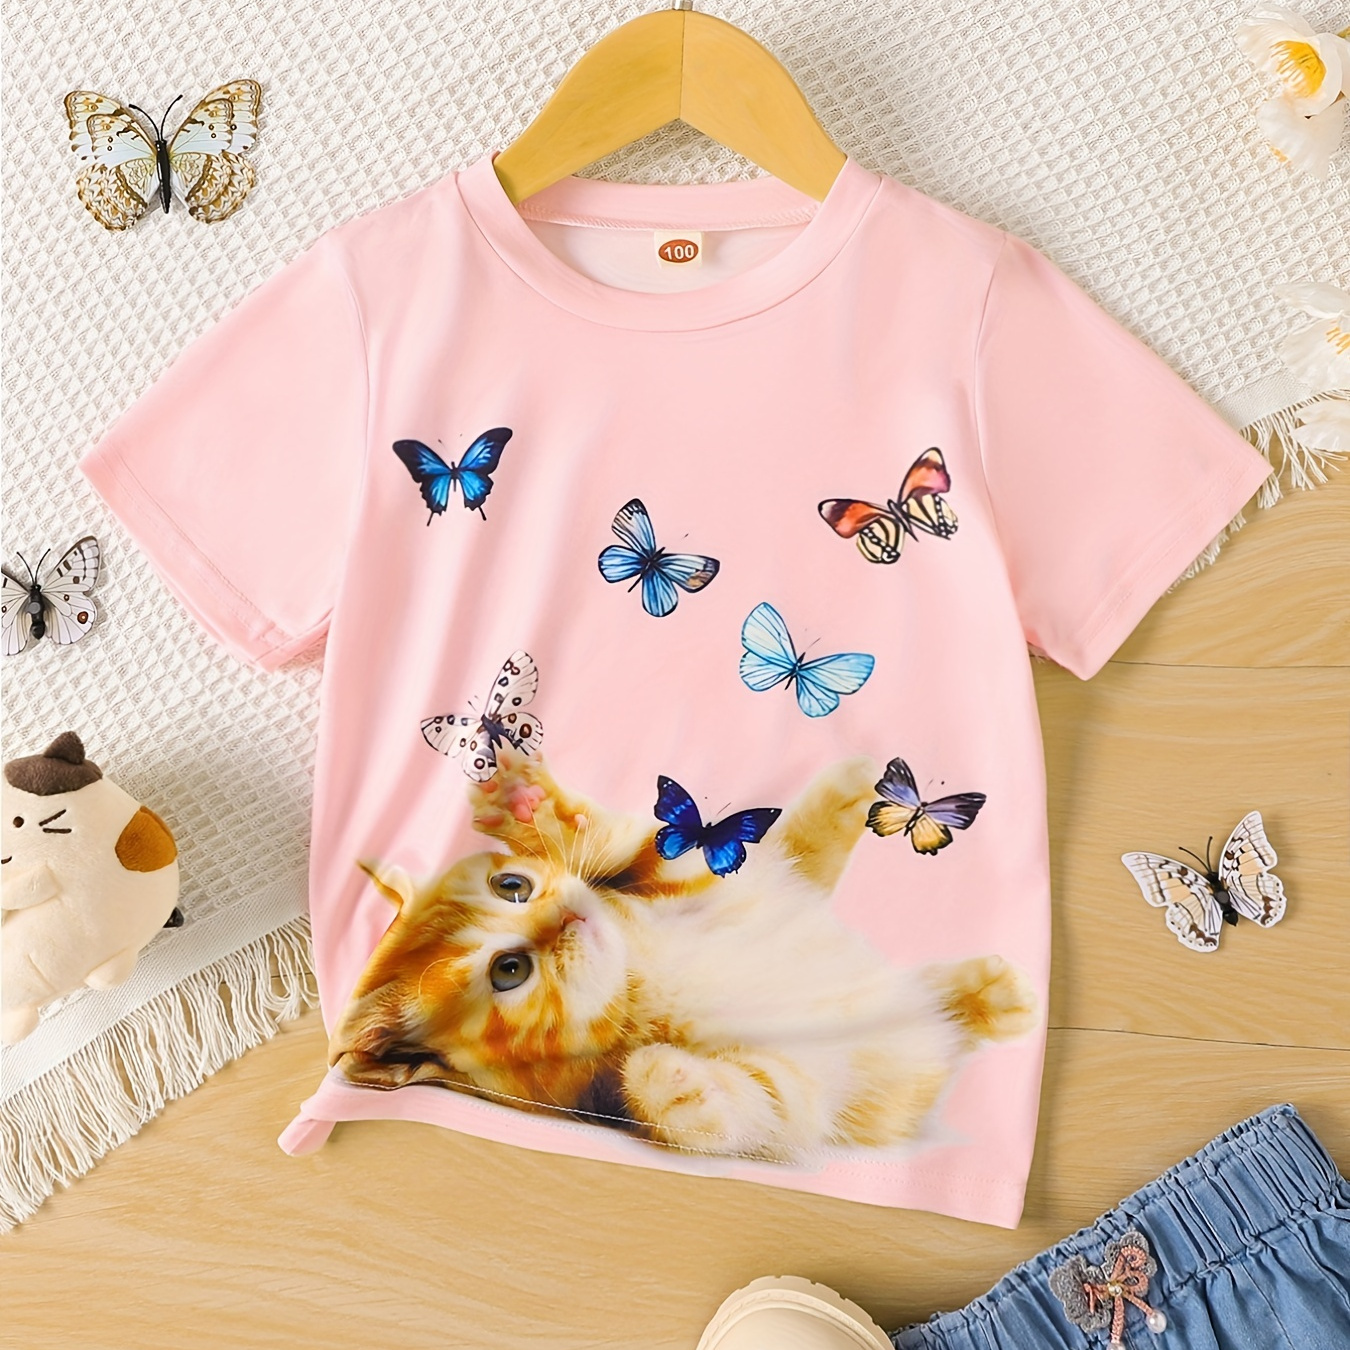 

Kitten & Butterflies Fun Graphic Girls Casual T-shirt, Kids Crewneck Short Sleeve Tee Summer Tops Clothes